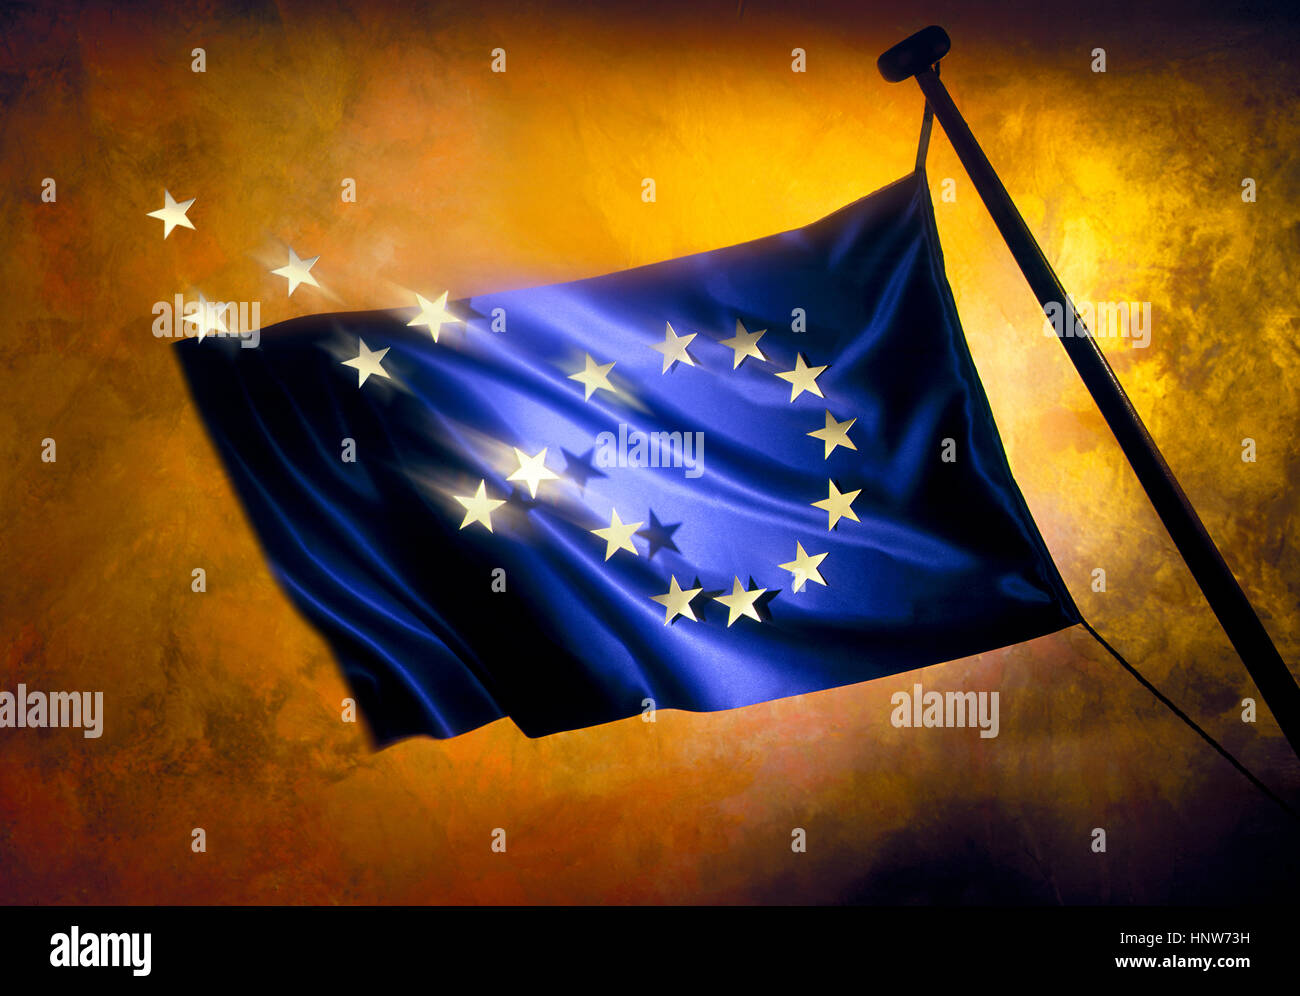 Brexit, laissant les étoiles du drapeau européen contre golden background Banque D'Images